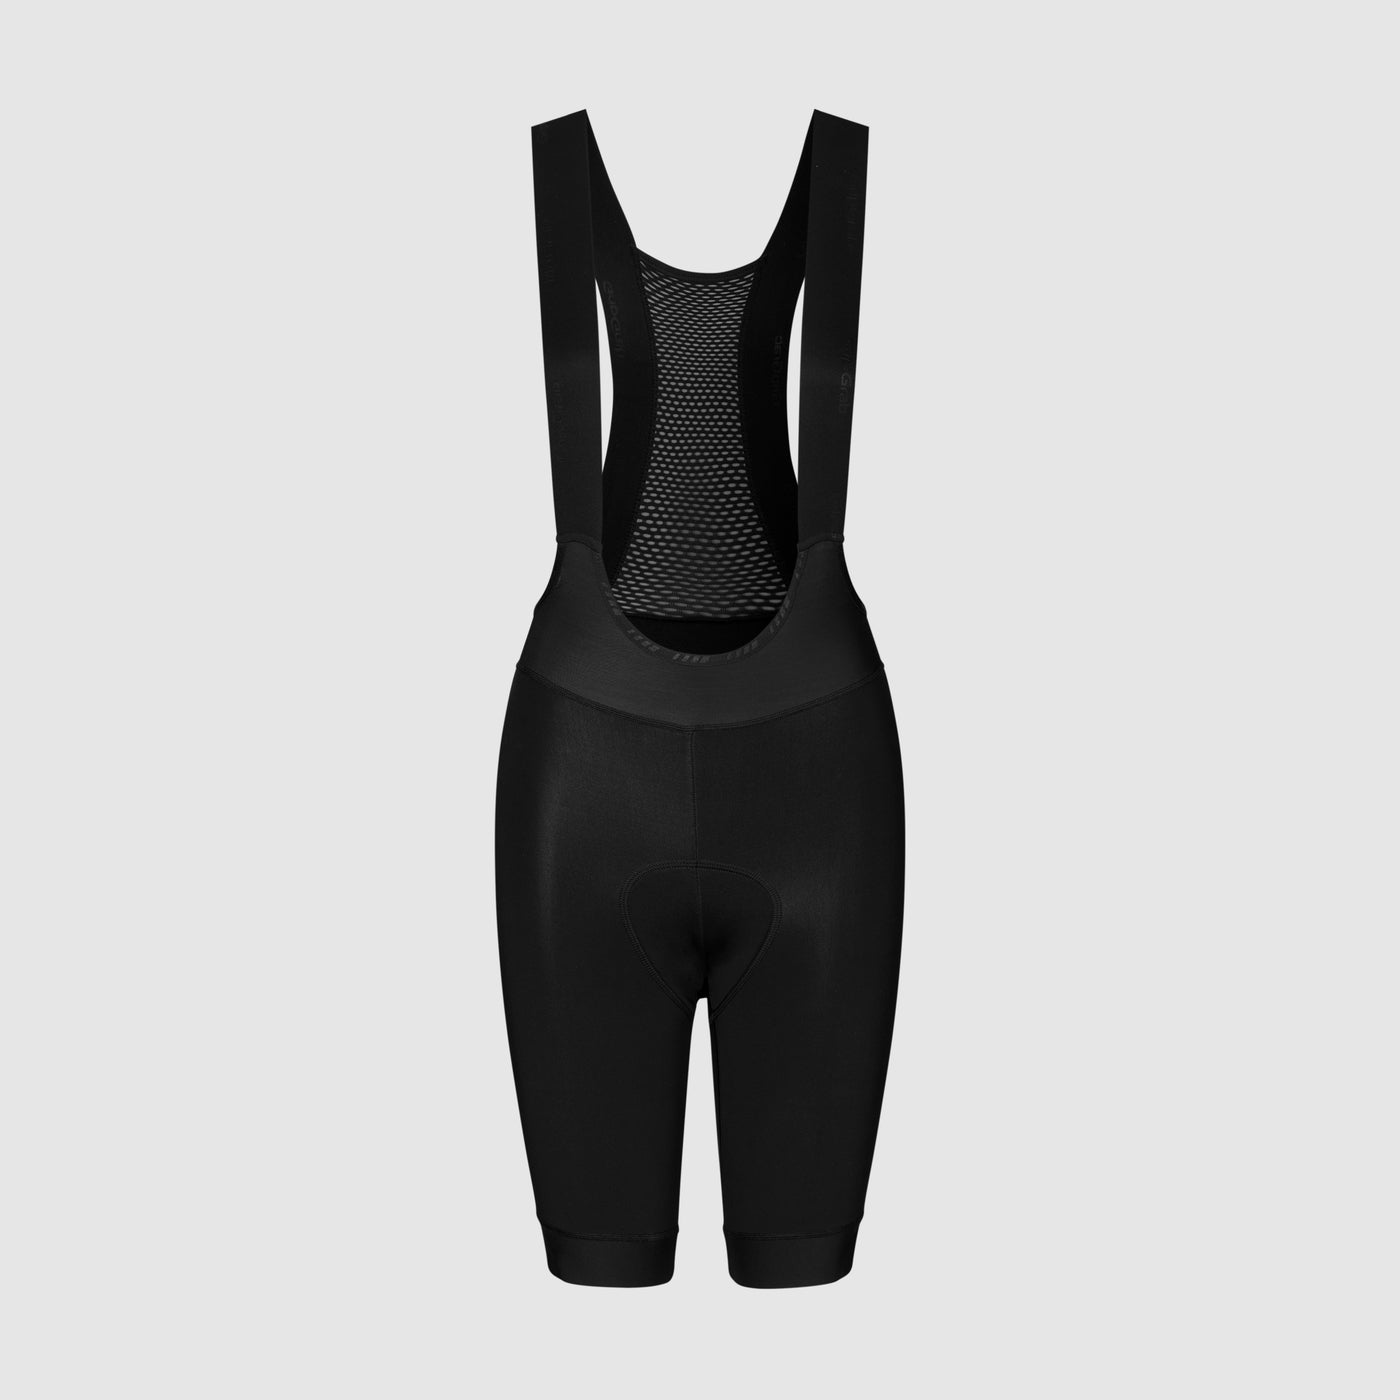 Women’s AquaRepel Water-Resistant Bib Shorts